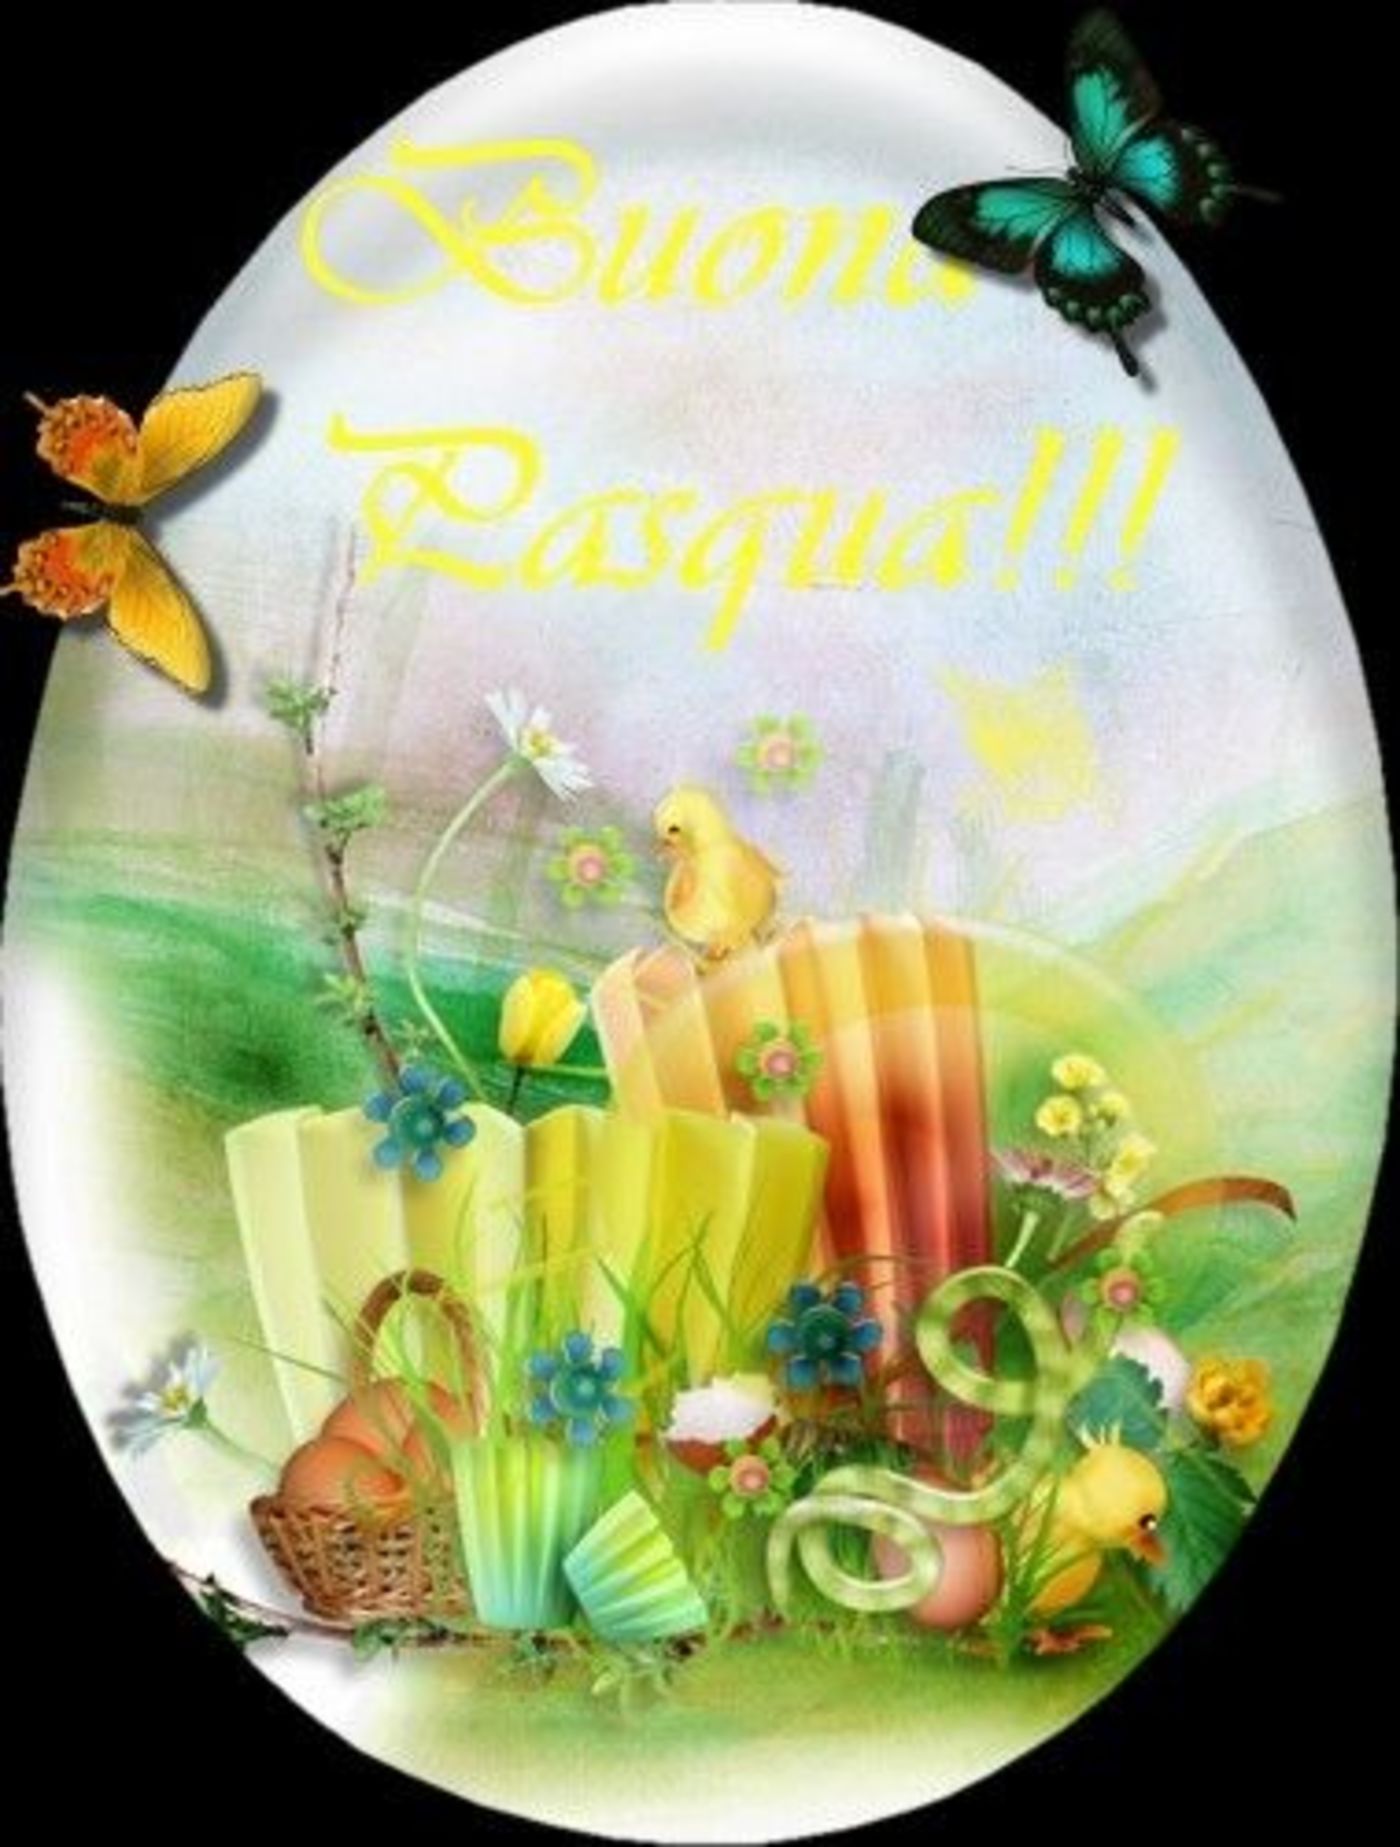 Buona Pasqua immagini da condividere gratis 8644